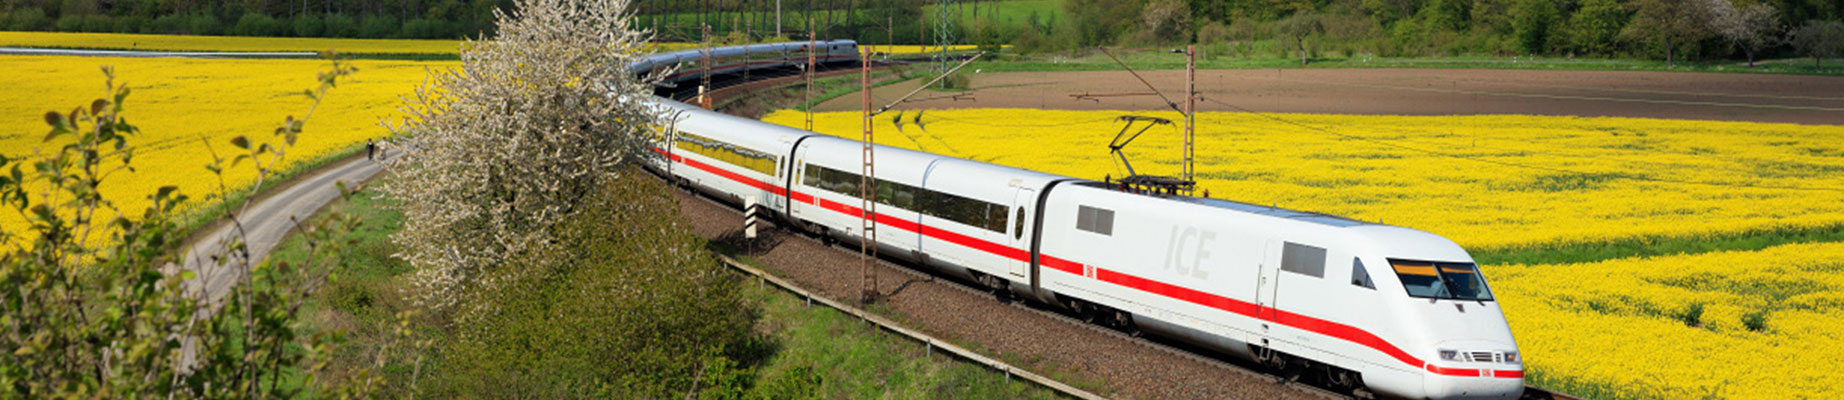 Zug der deutschen Bahn